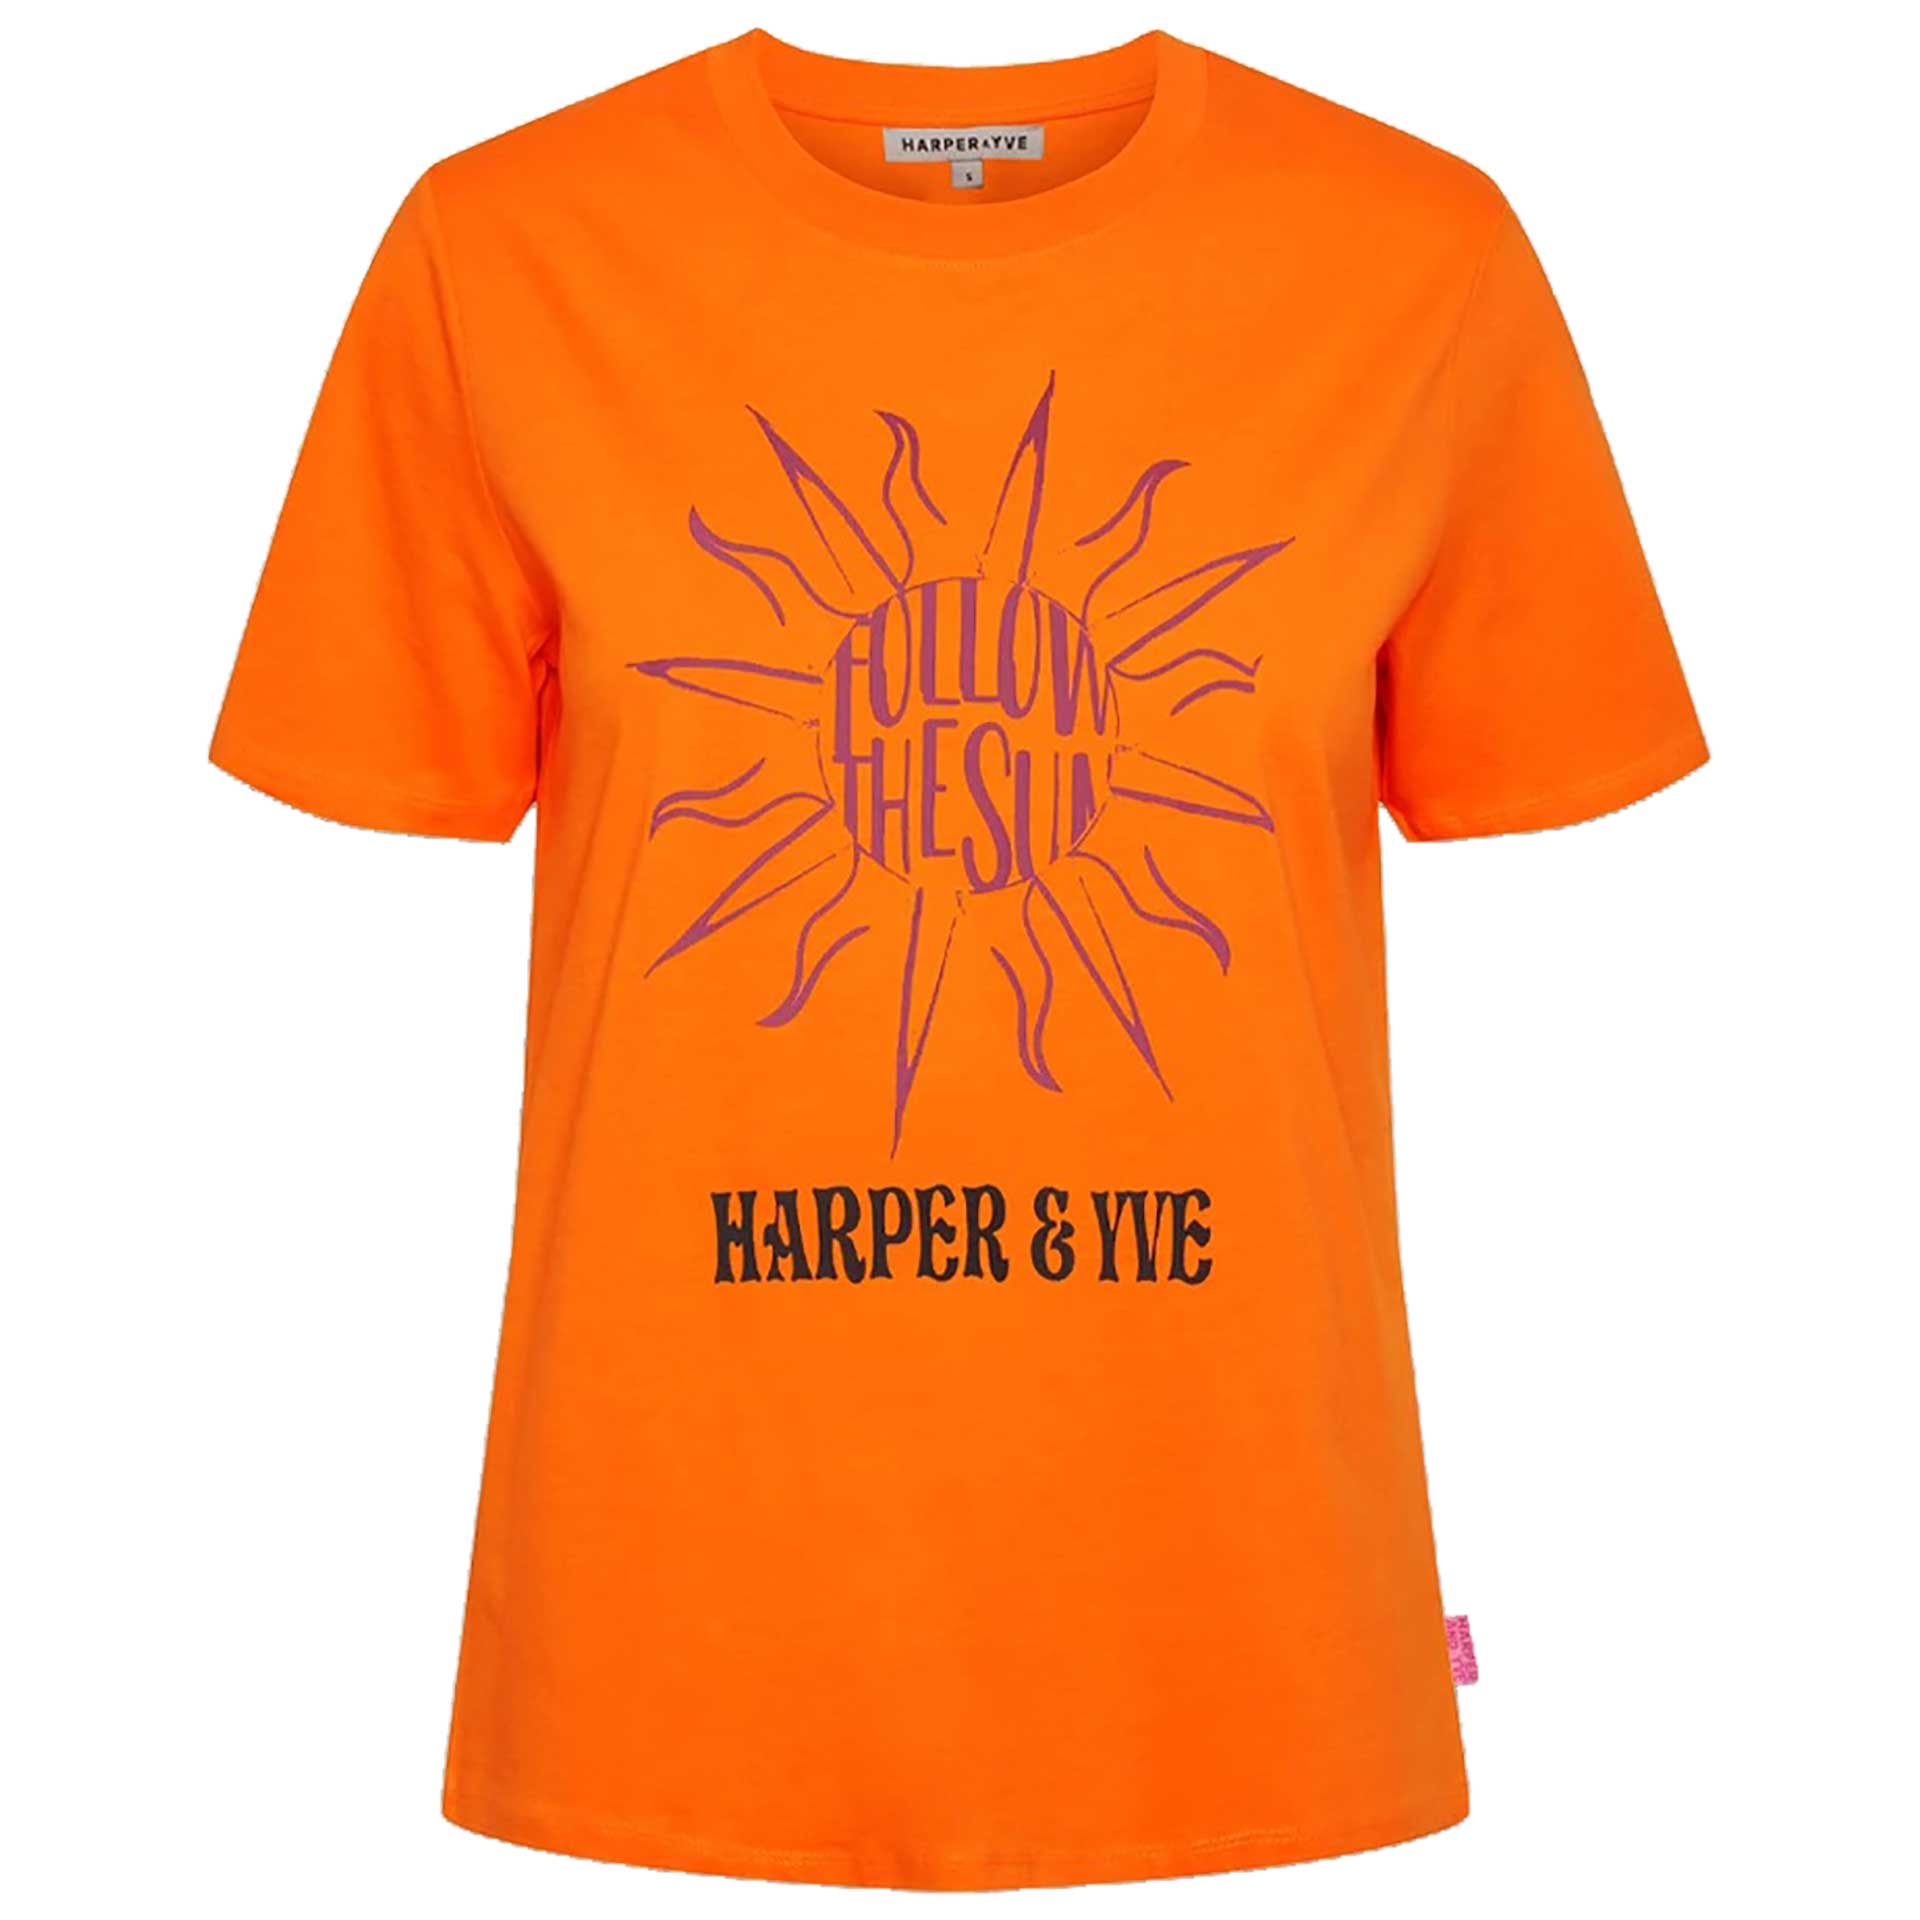 Harper & Yve T-shirt Follow the Sun 1